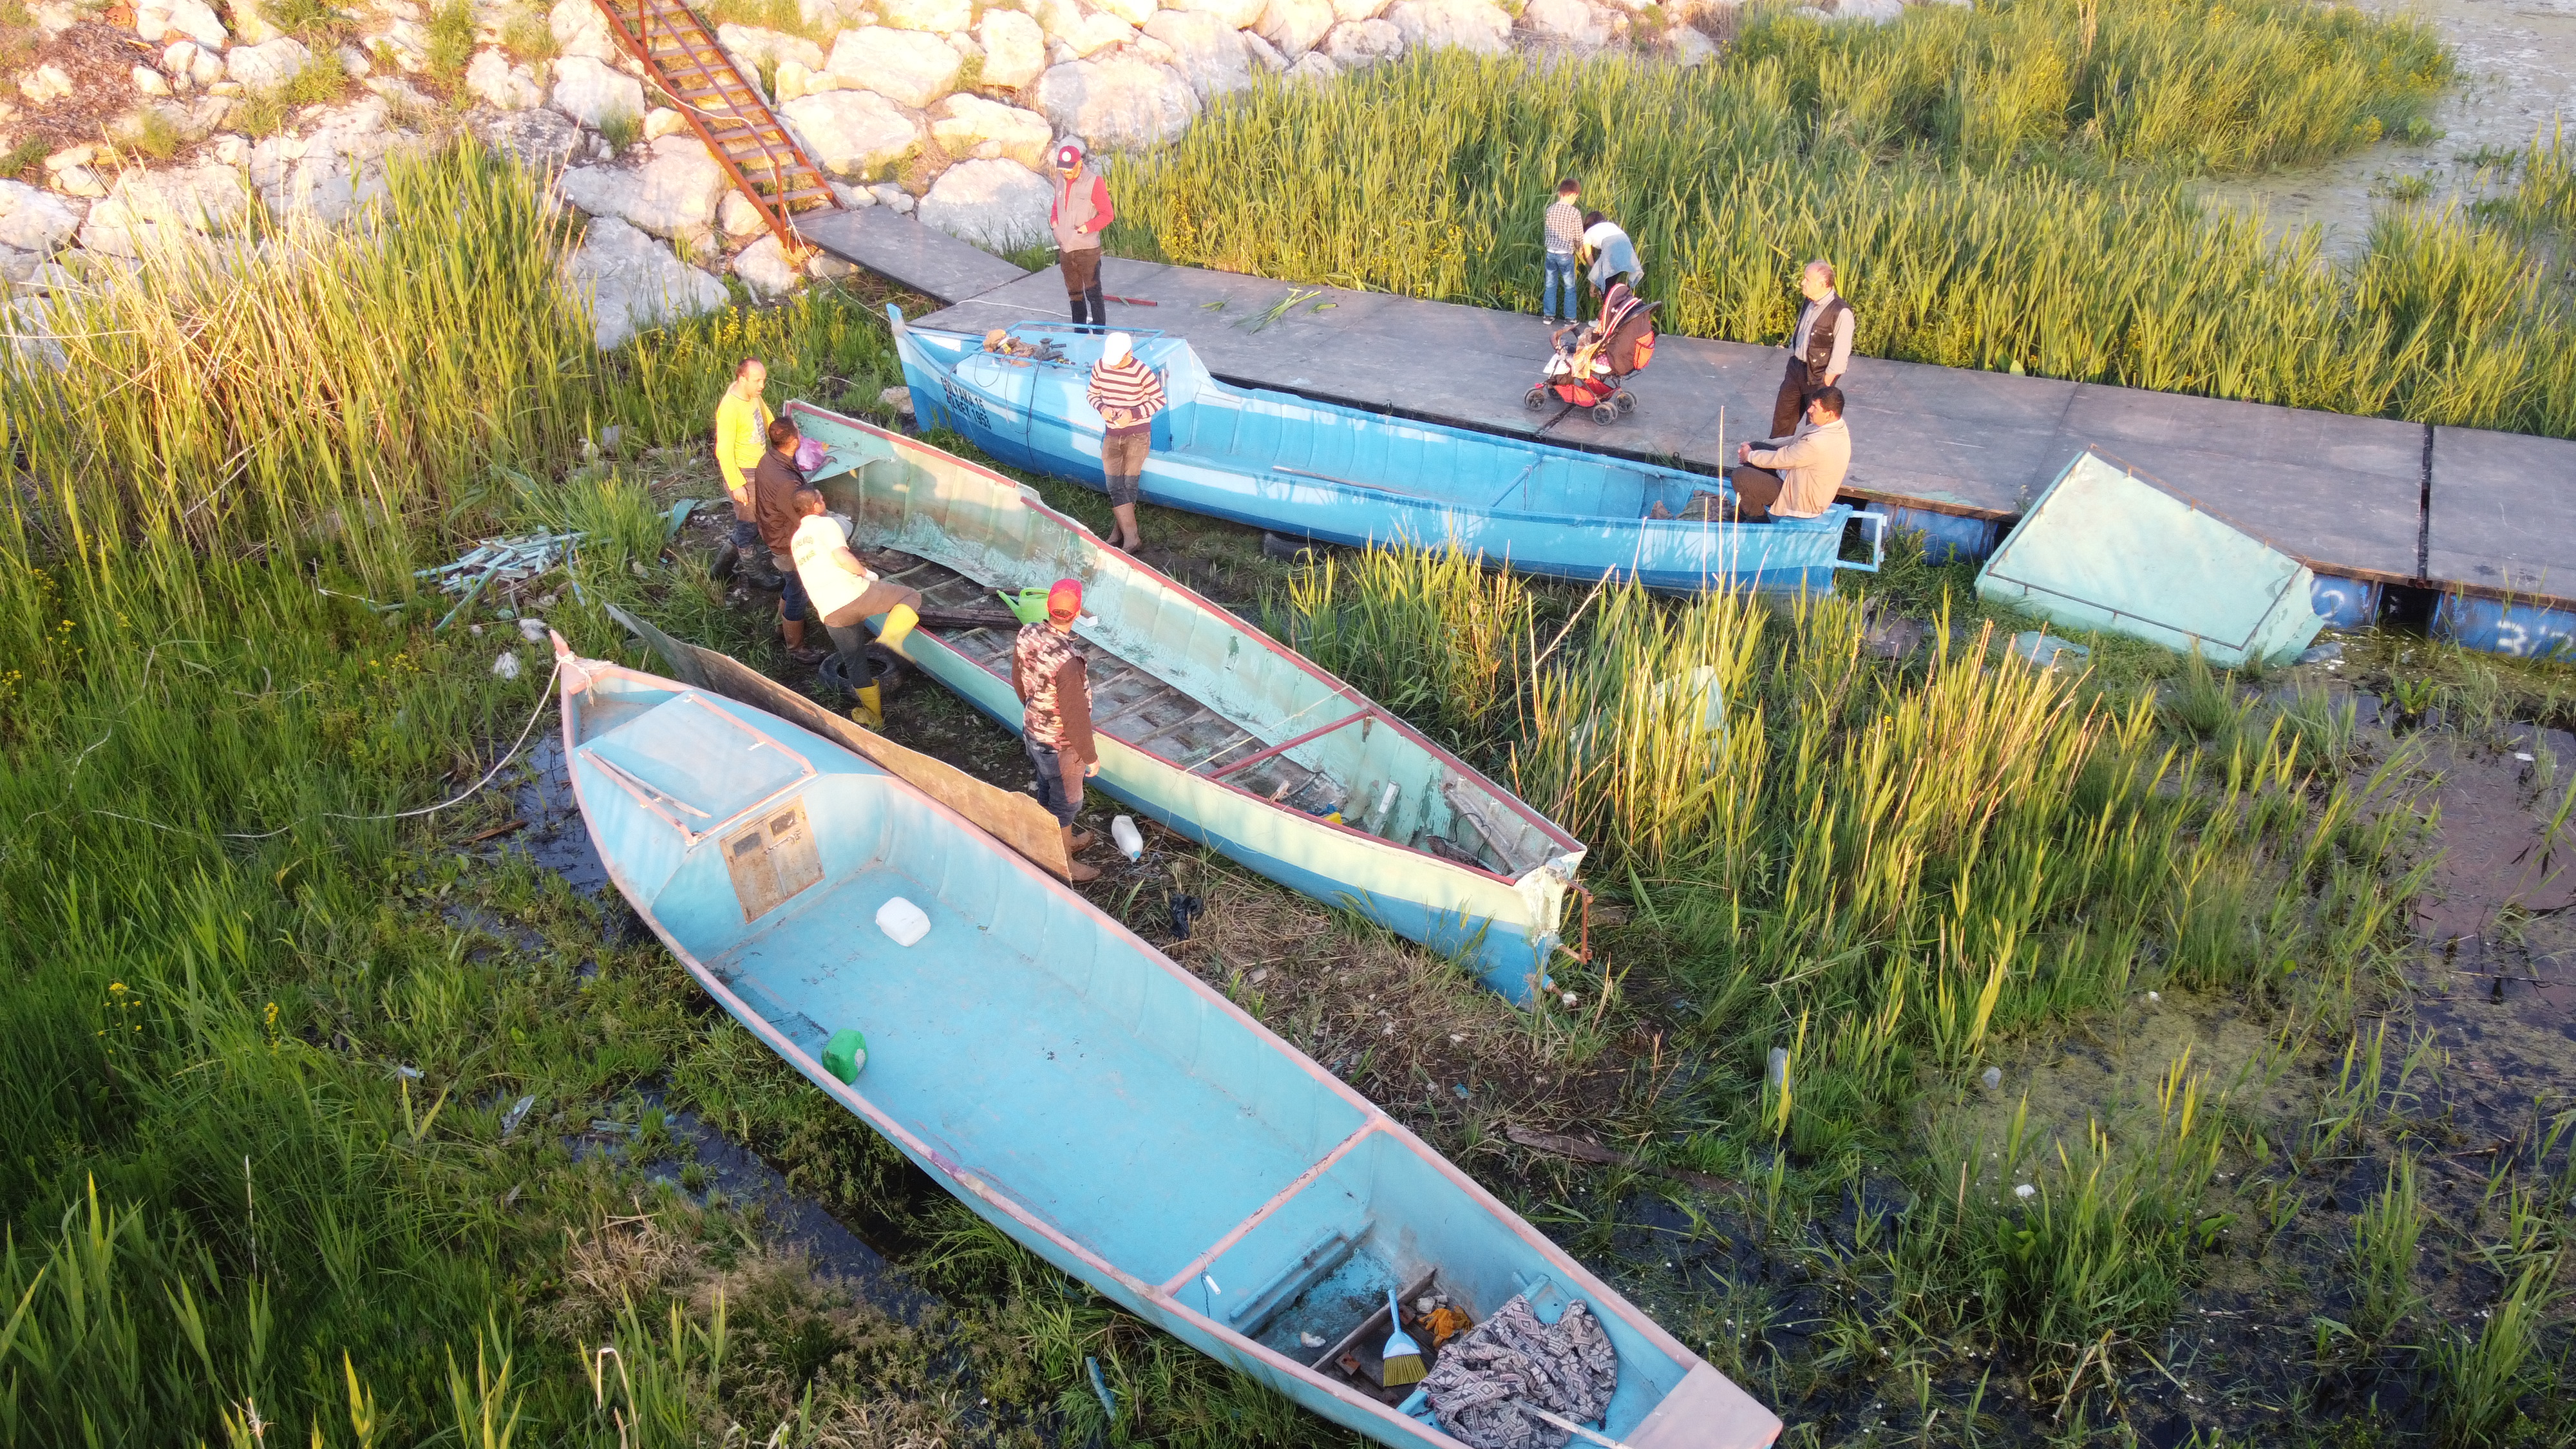 Beyşehir Gölü'nde balıkçılar yeni av sezonuna hazırlanıyor